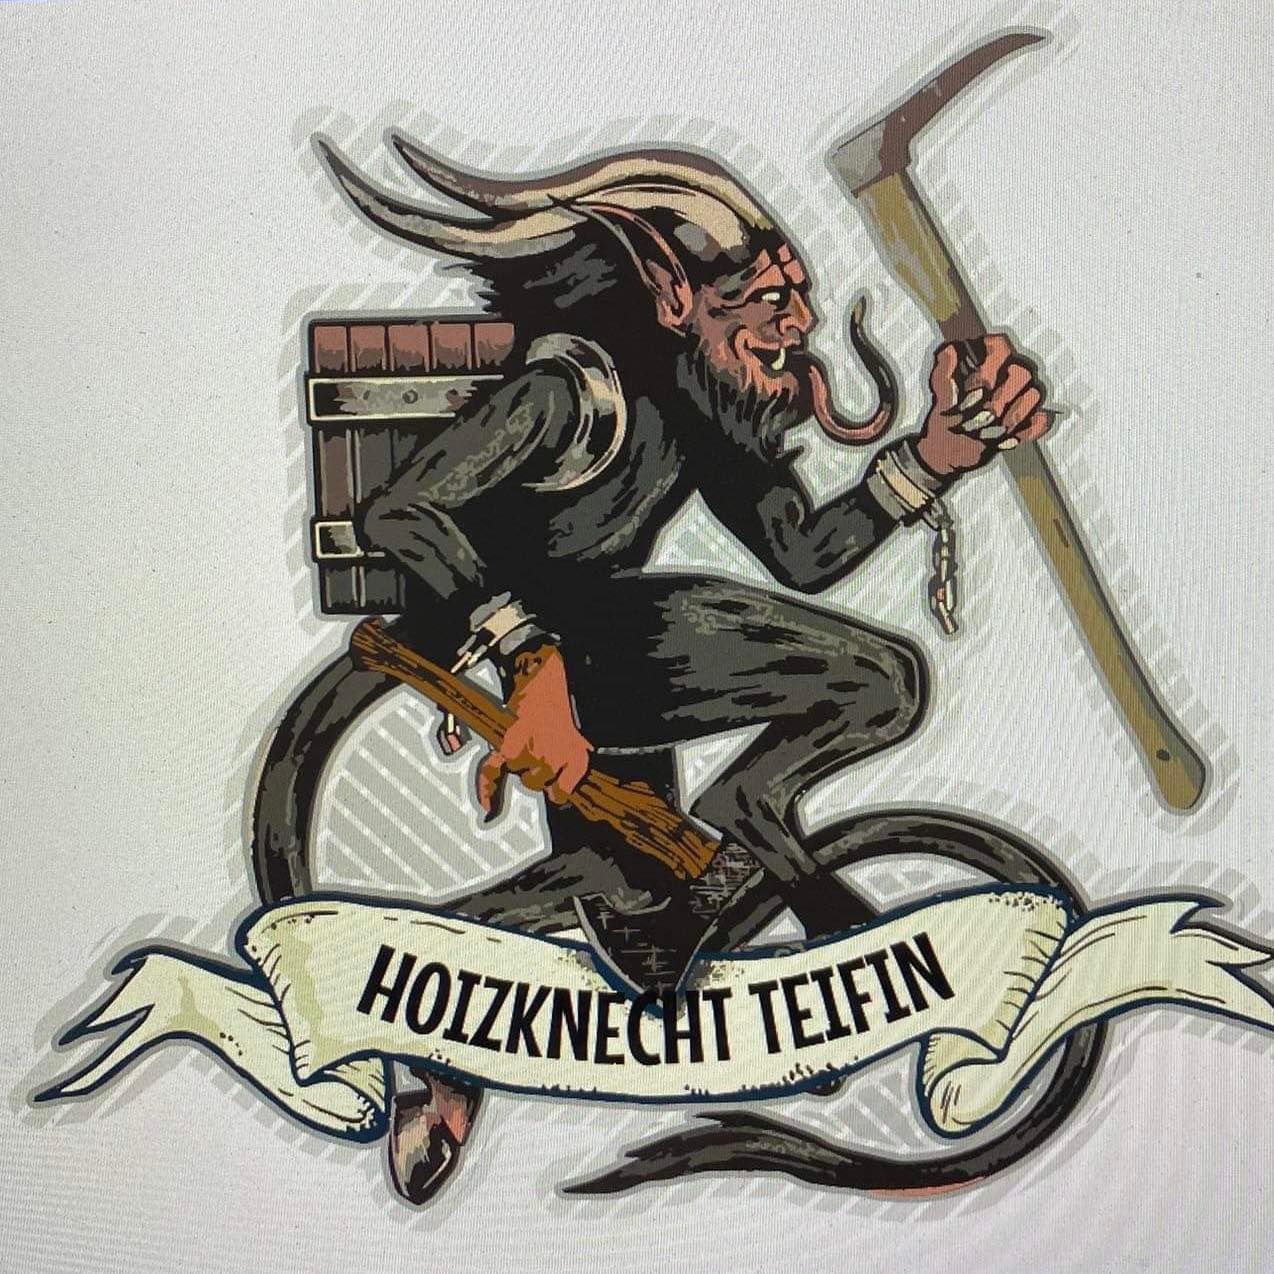 Holzknecht Teifin